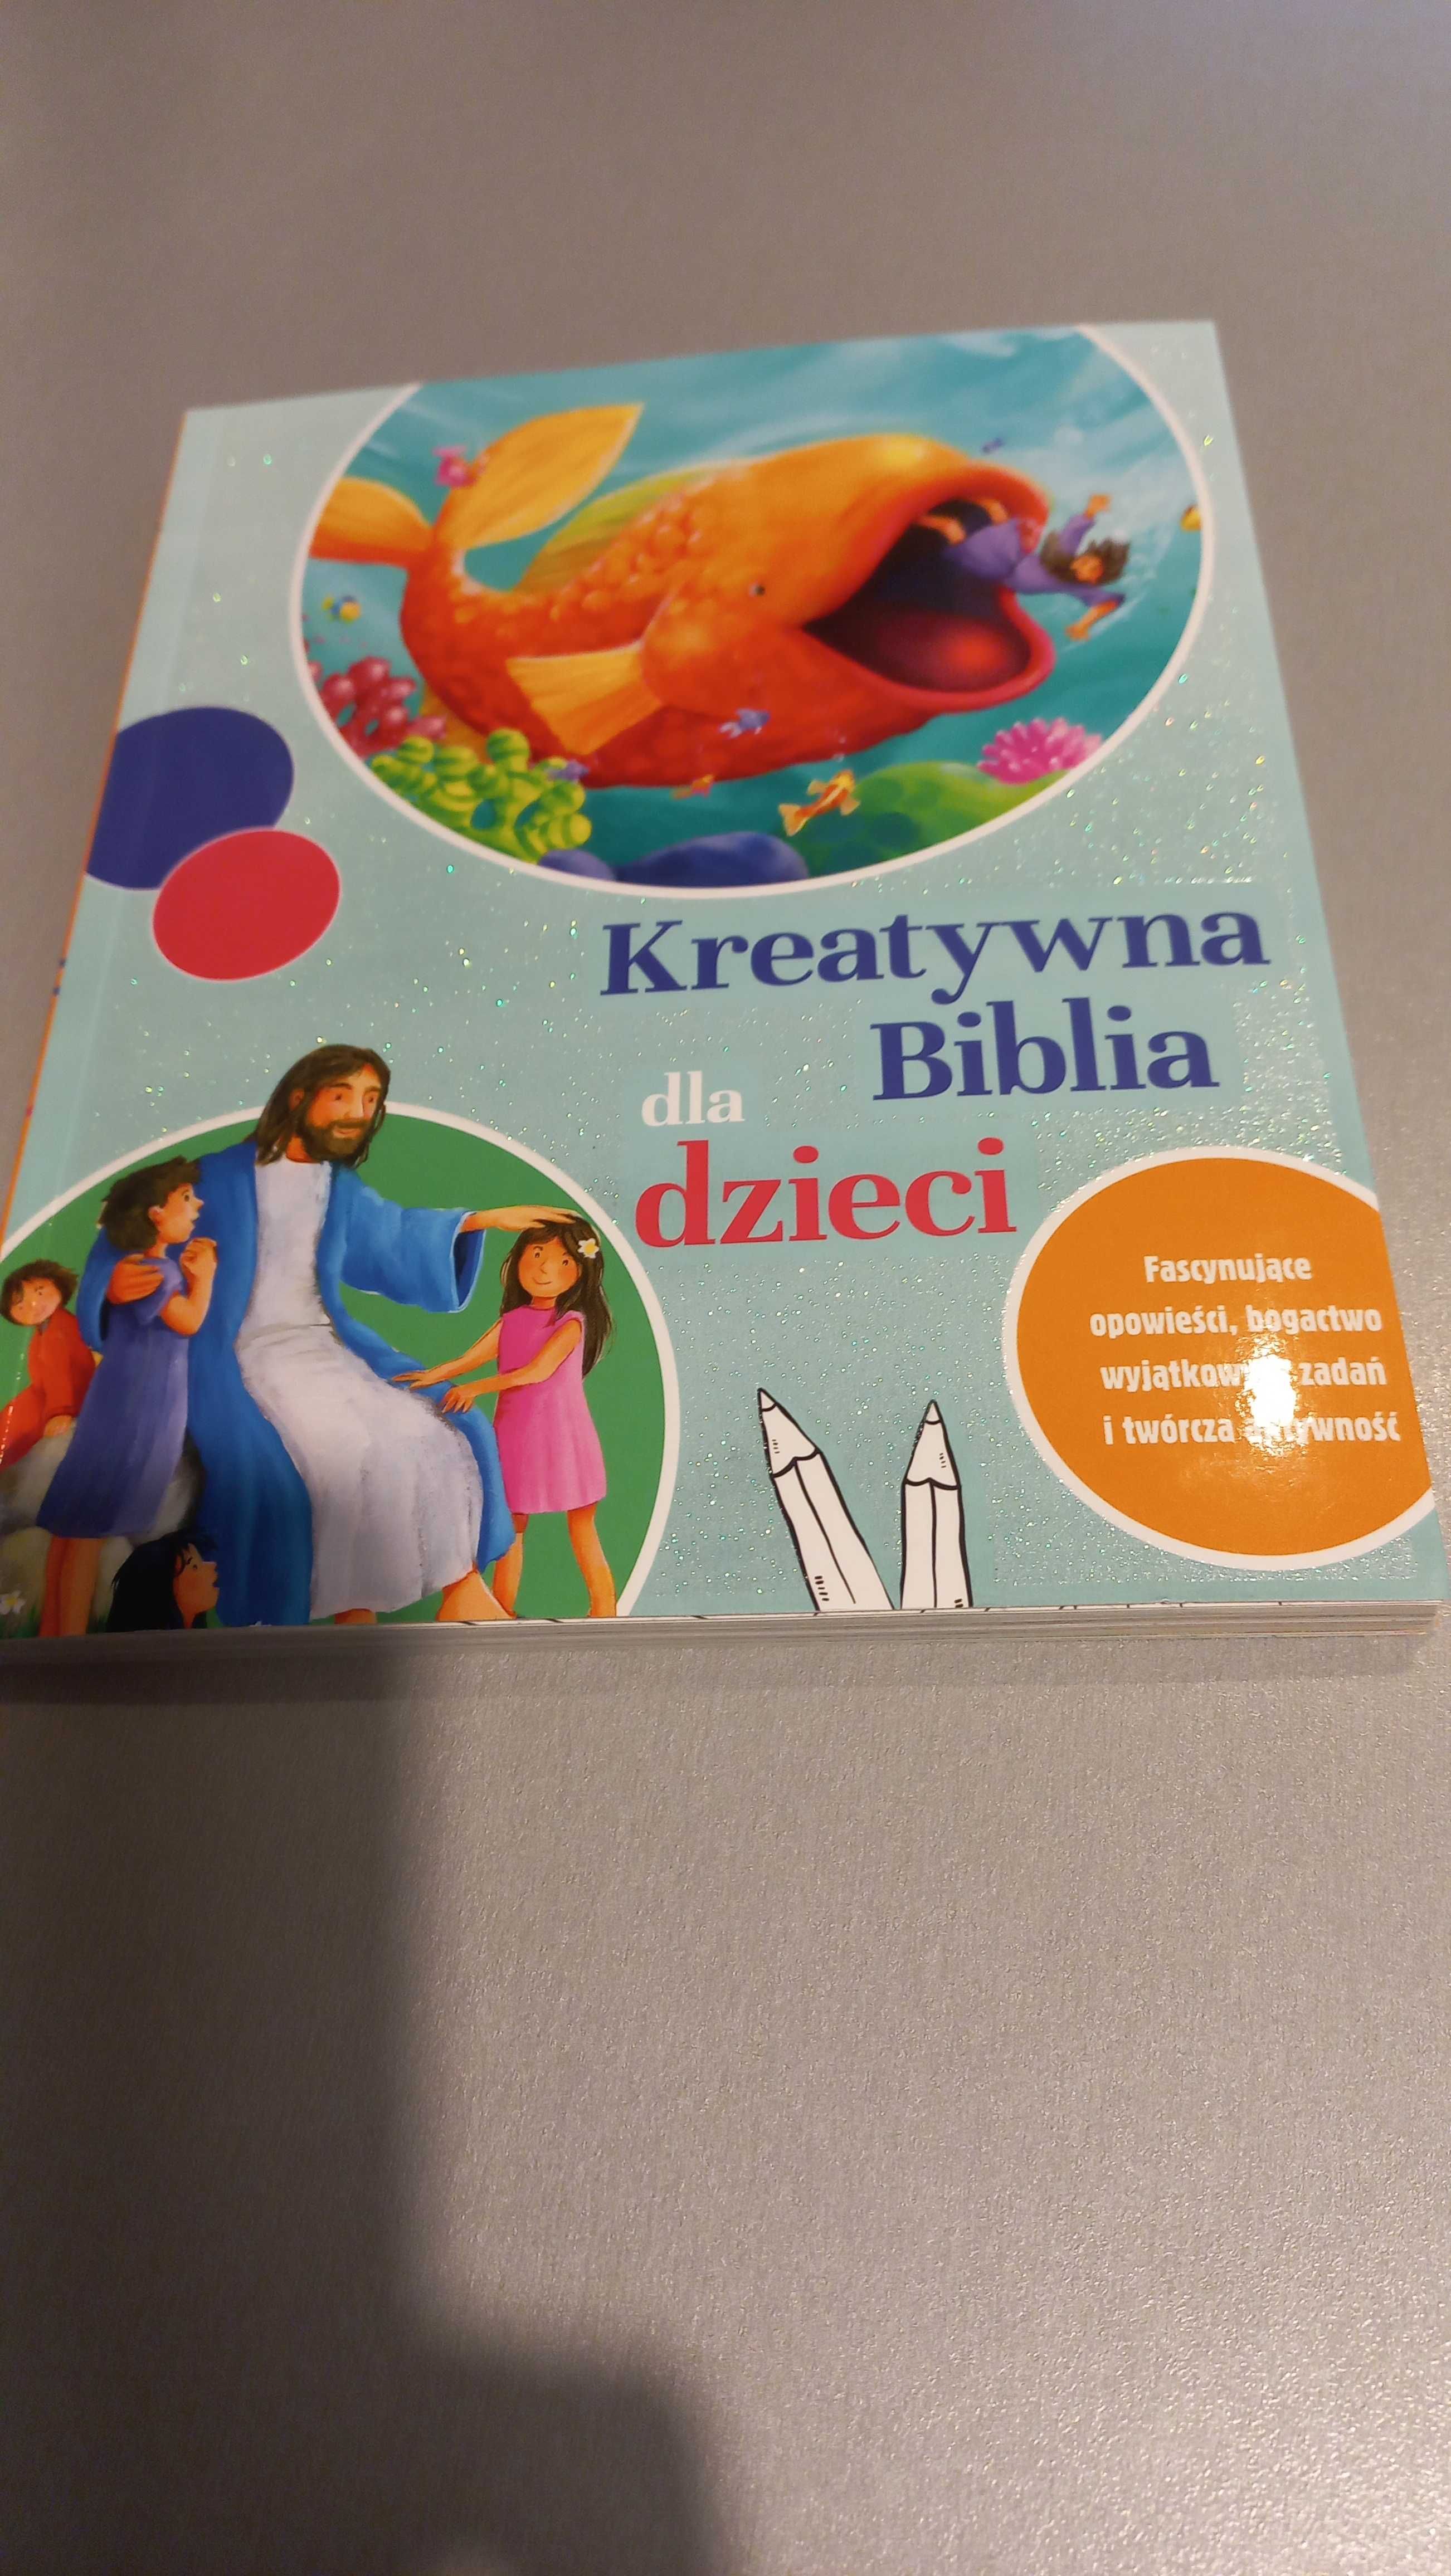 Biblia nowa biblia kreatywna dla dzieci nowa